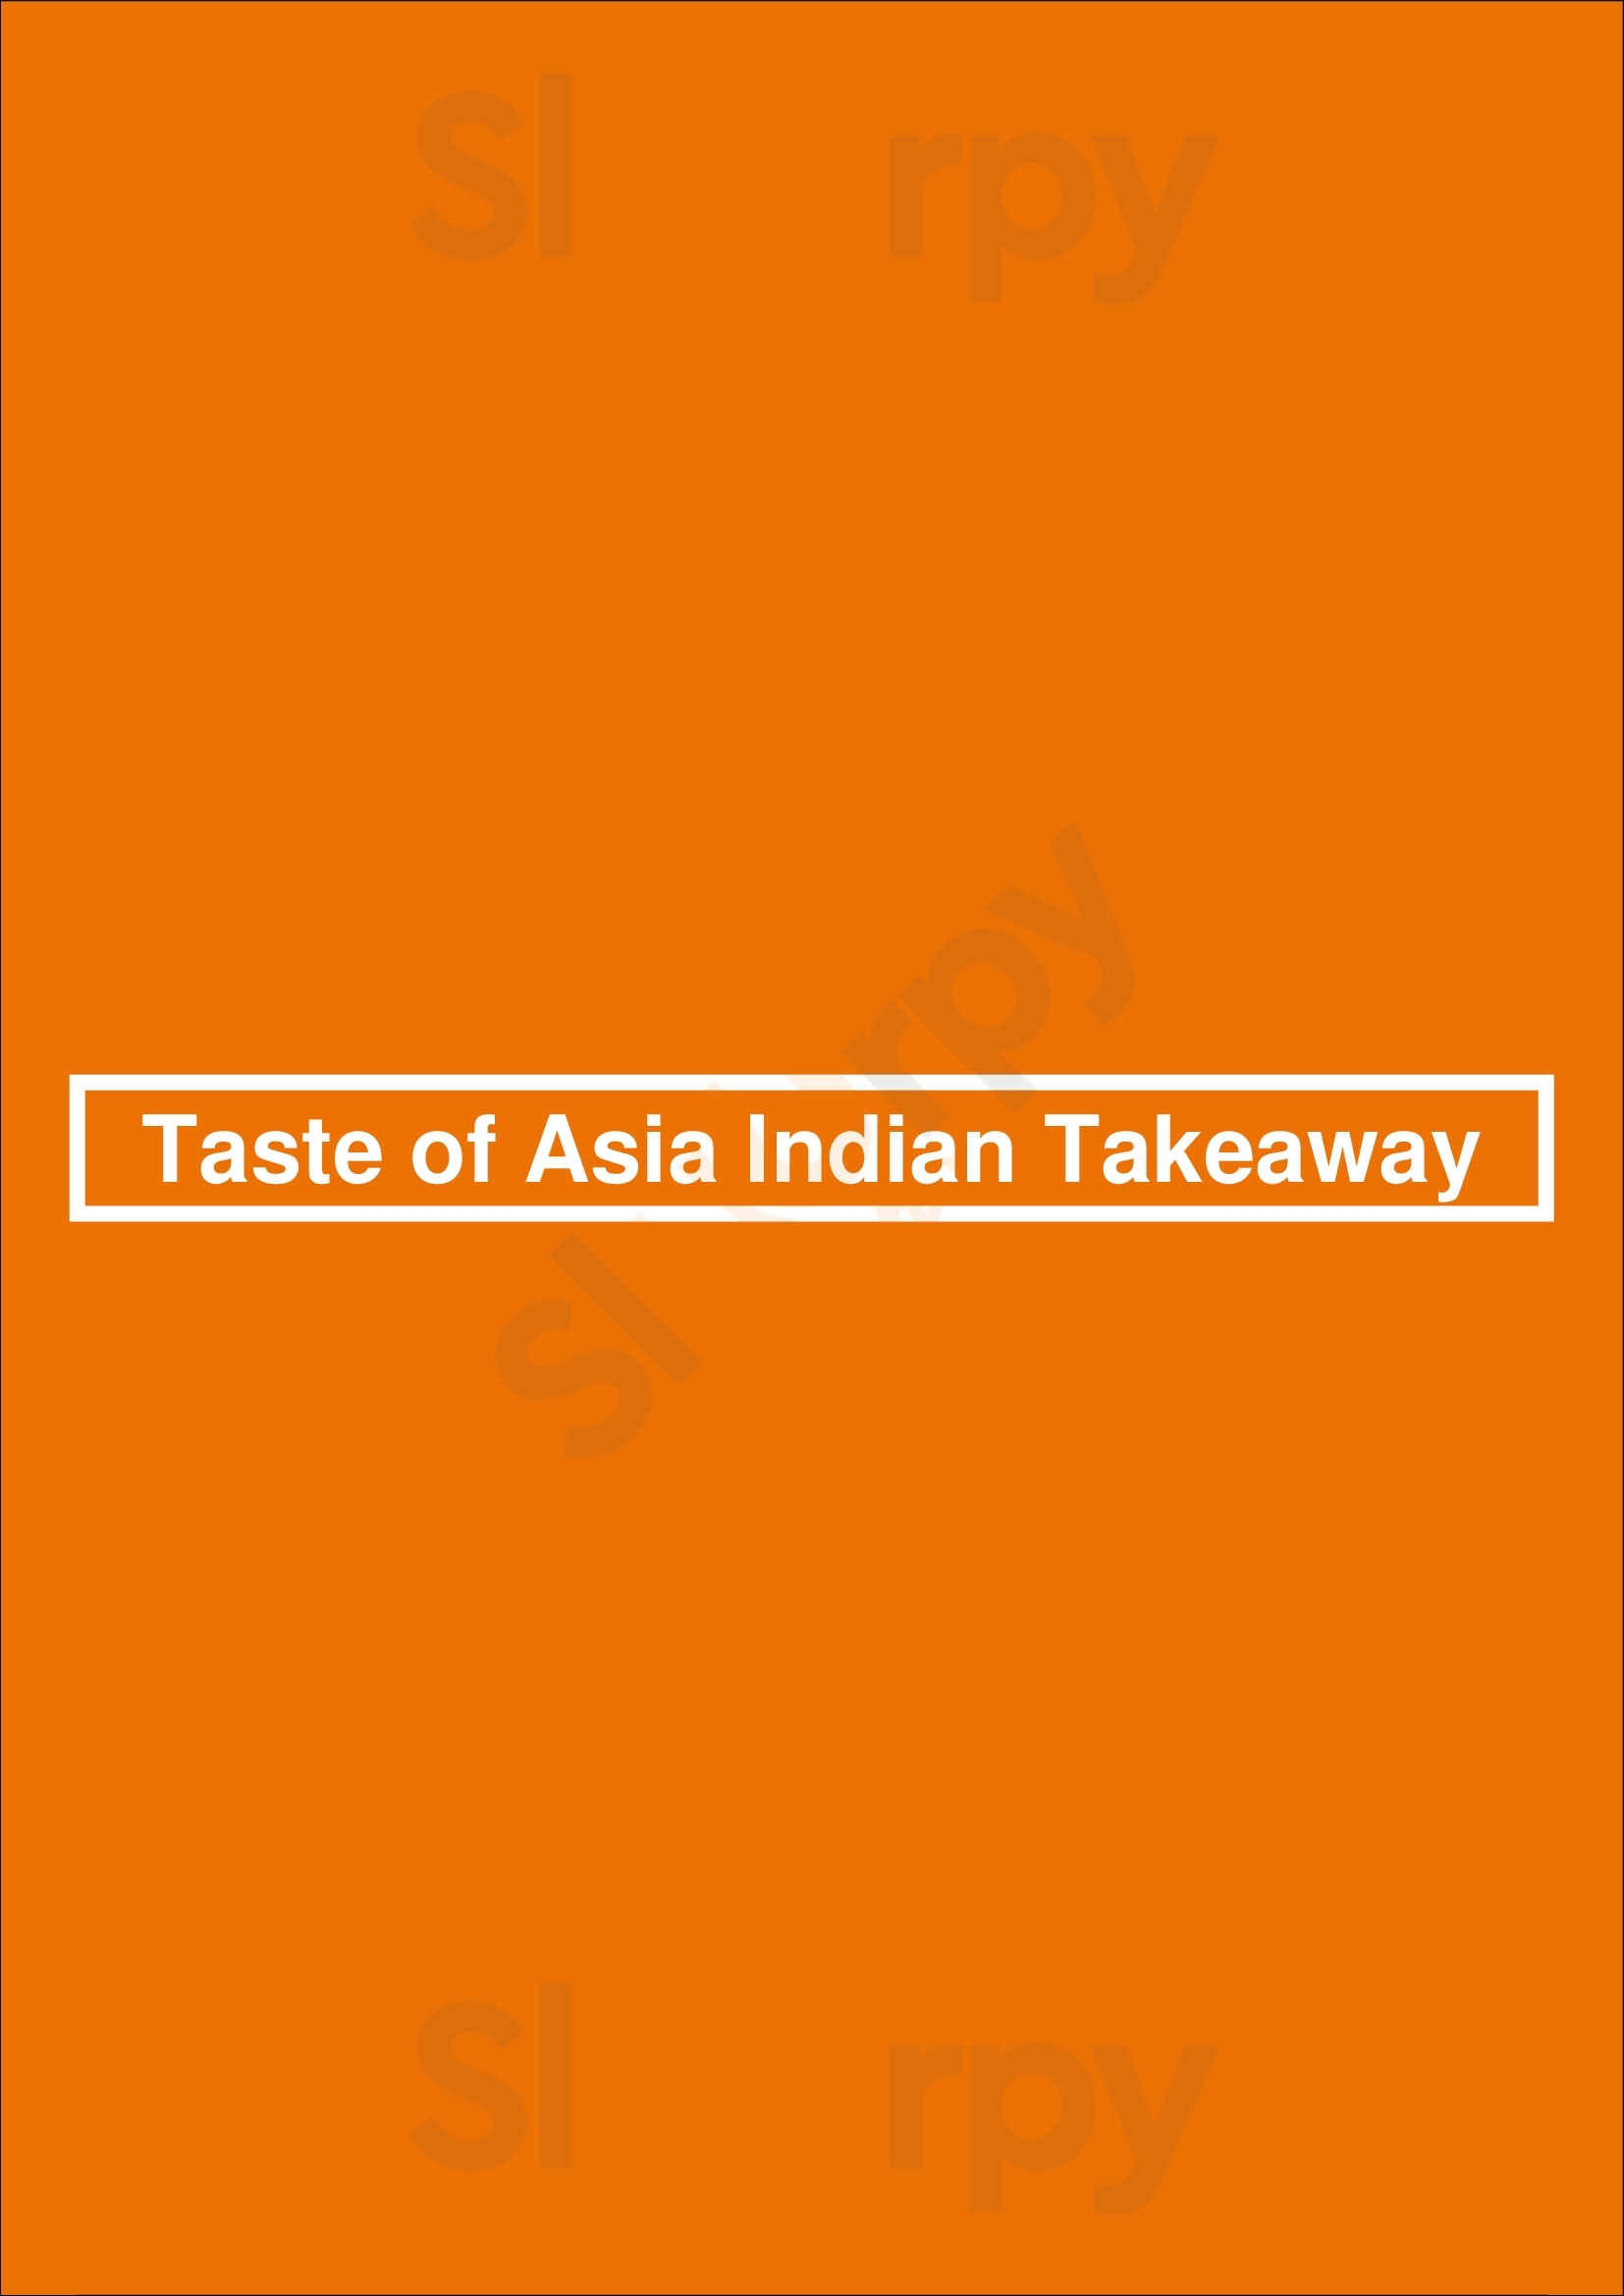 Taste Of Asia Indian Takeaway London Menu - 1